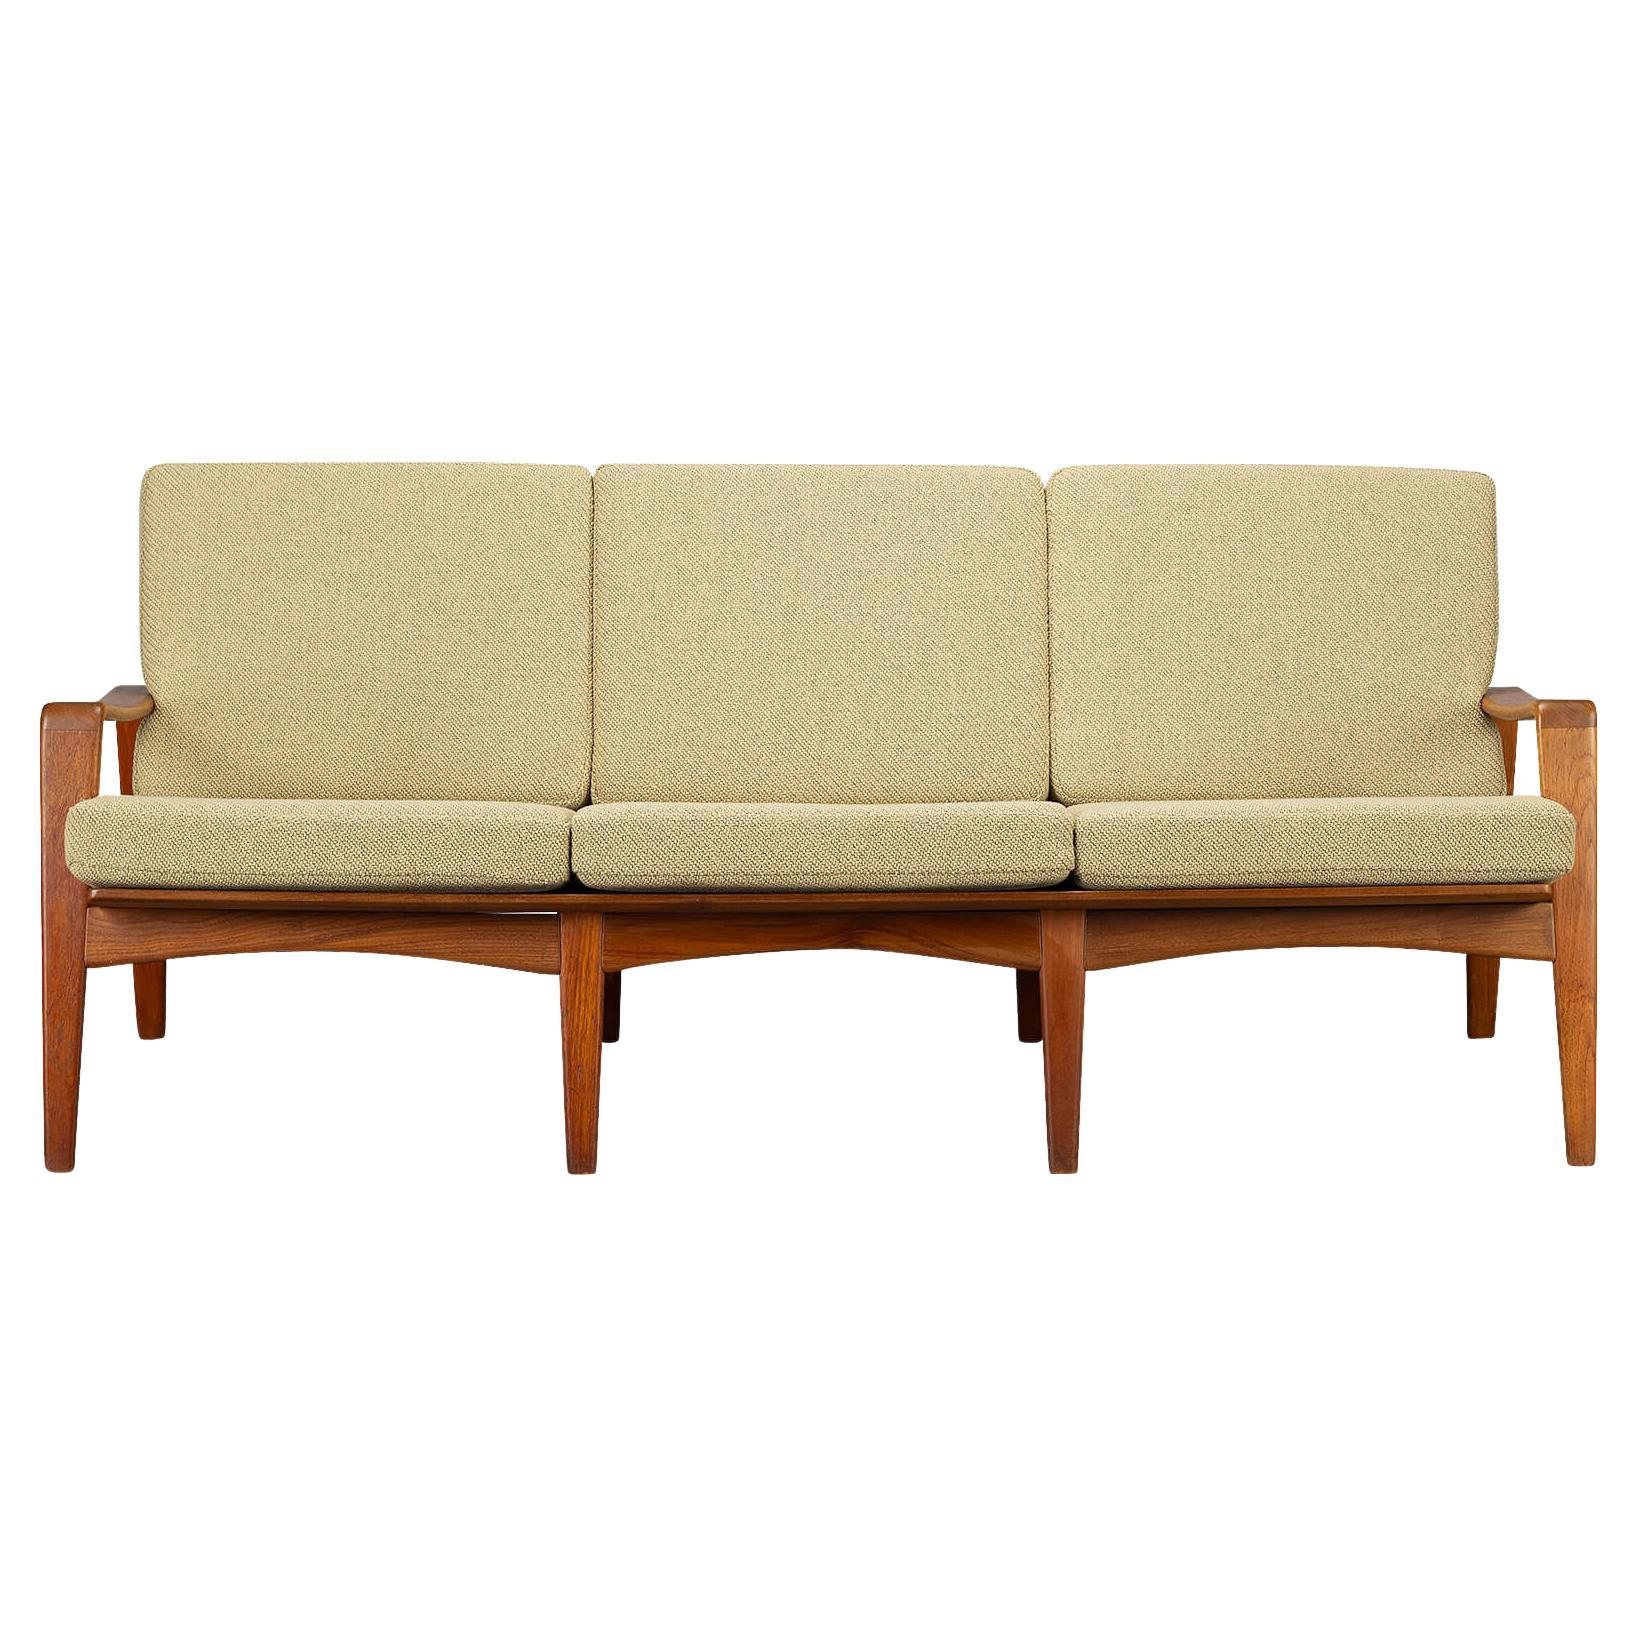 Dänisches neu gepolstertes Sofa von Modell Nr. 35 von Arne Wahl Iversen, 1960er Jahre